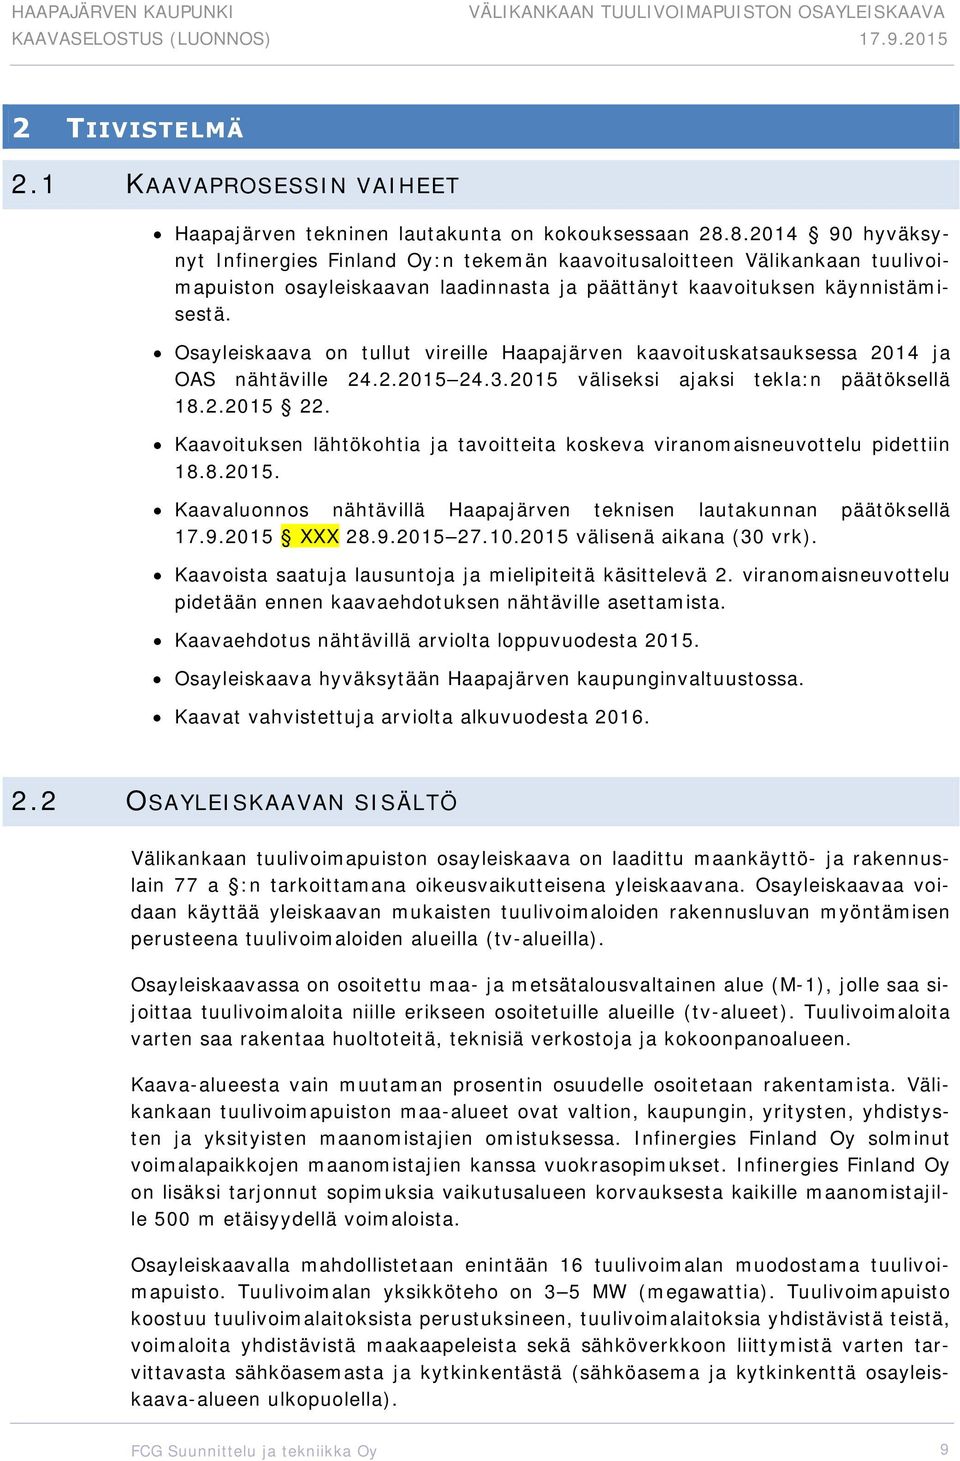 Osayleiskaava on tullut vireille Haapajärven kaavoituskatsauksessa 2014 ja OAS nähtäville 24.2.2015 24.3.2015 väliseksi ajaksi tekla:n päätöksellä 18.2.2015 22.